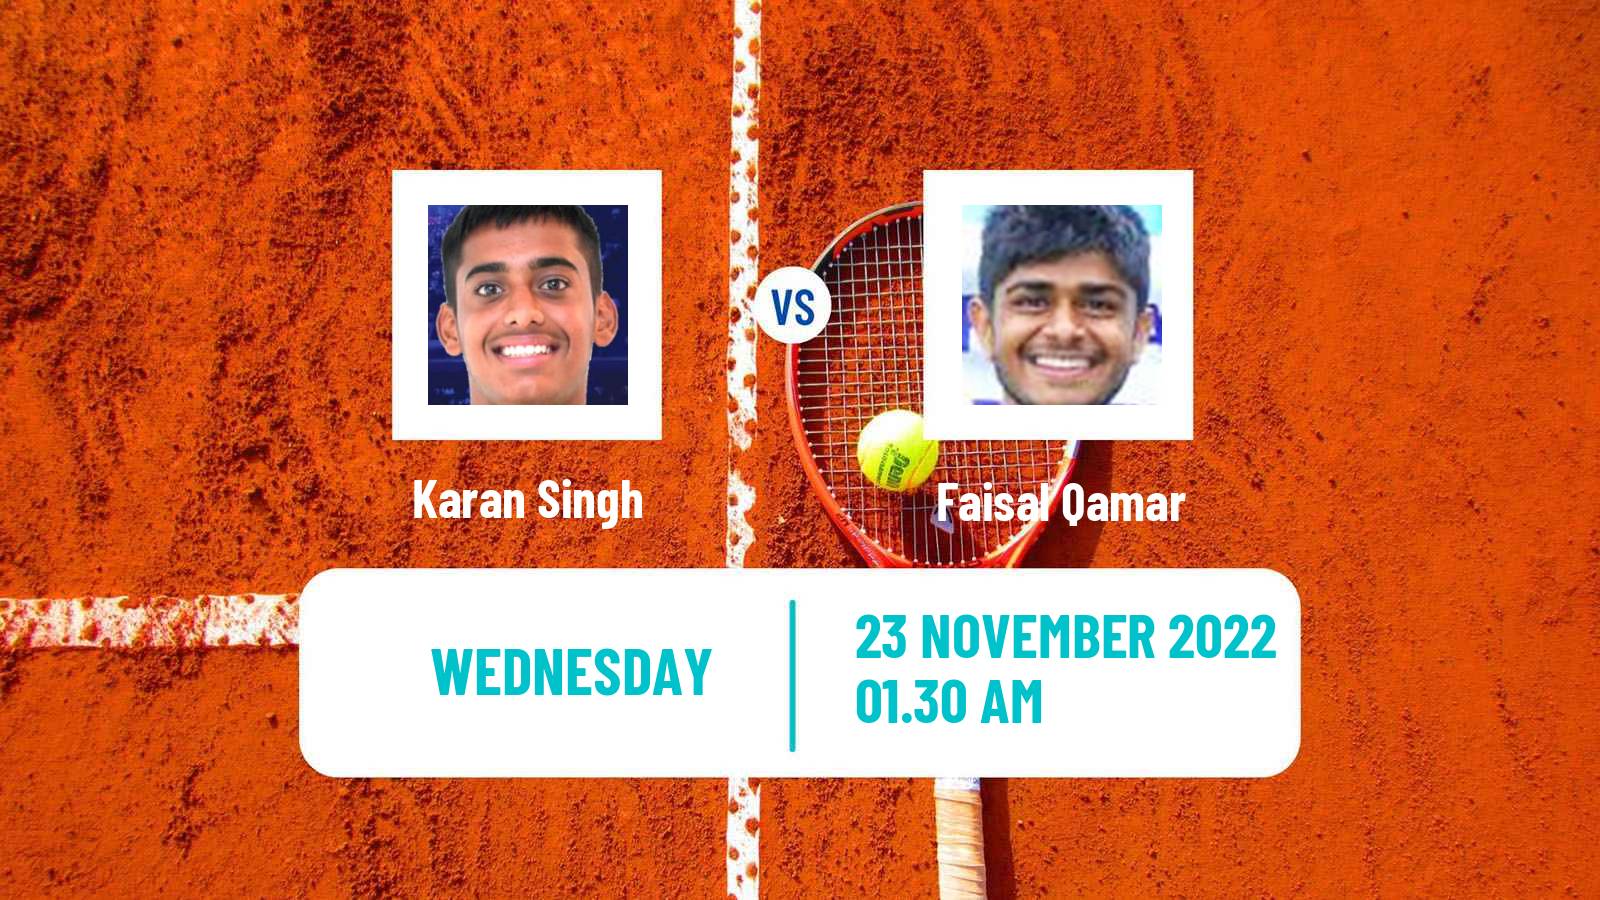 Tennis ITF Tournaments Karan Singh - Faisal Qamar